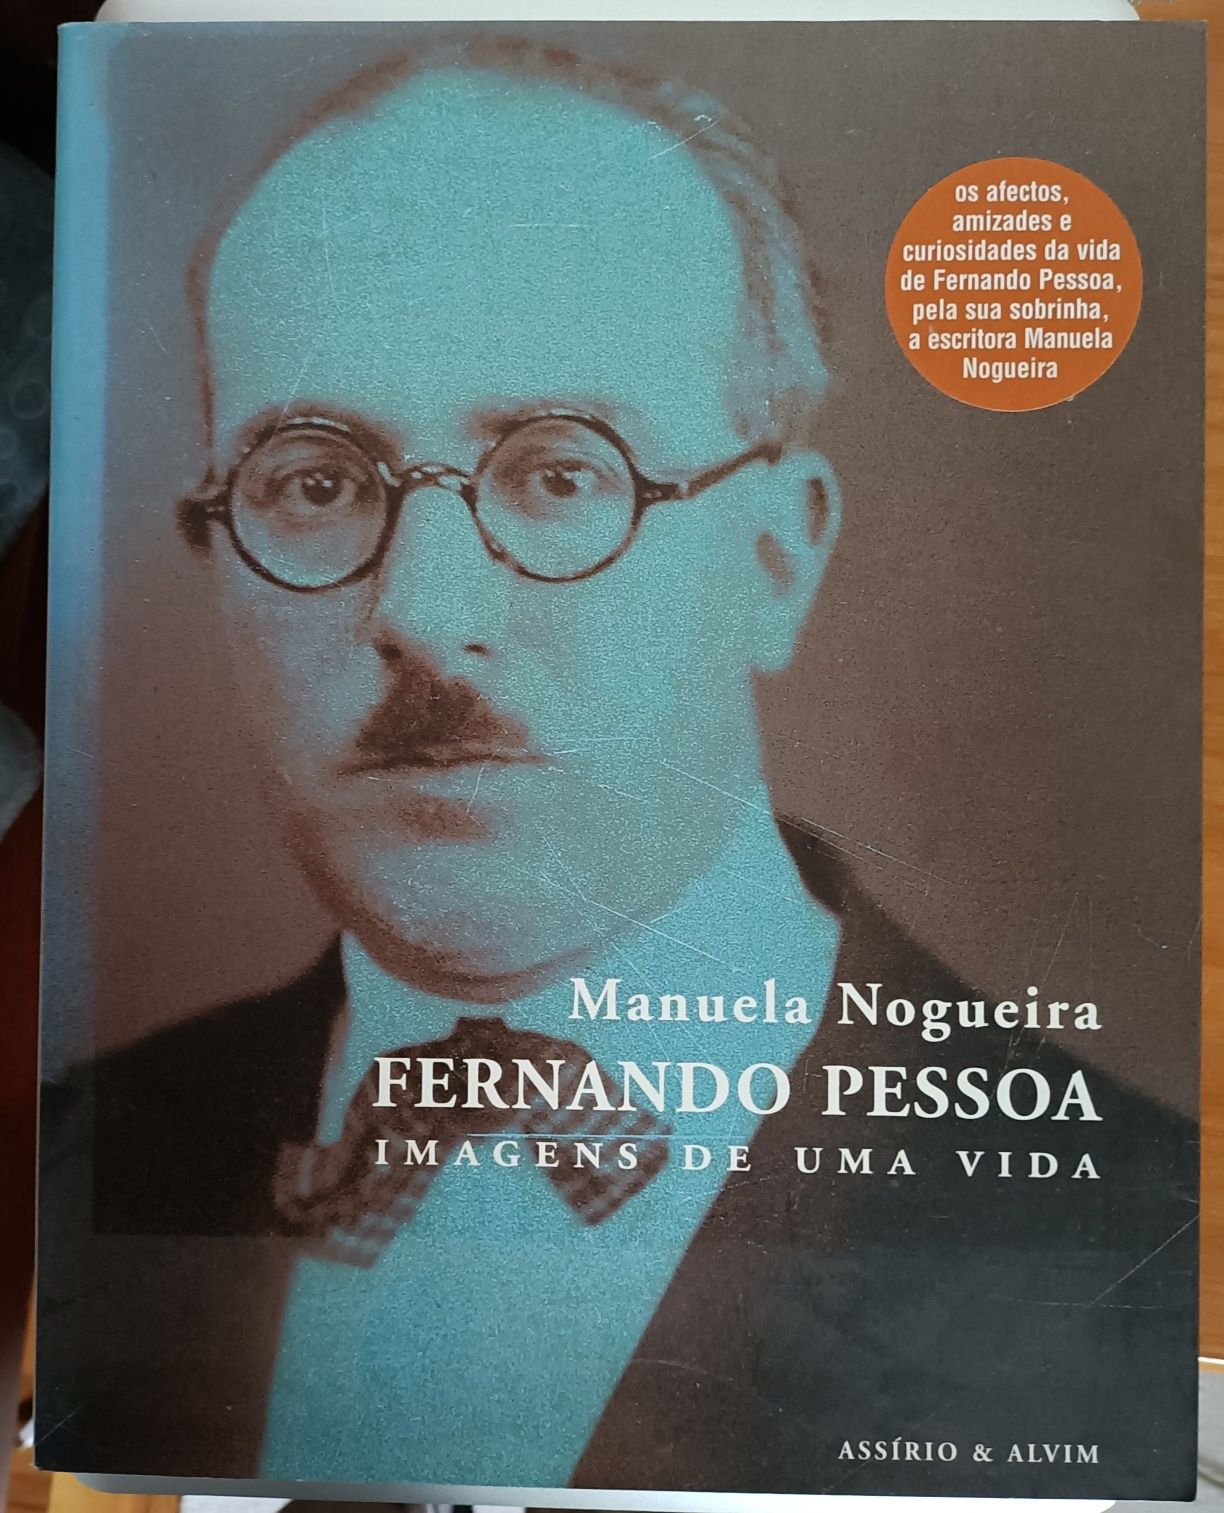 Fernando Pessoa - Imagens de uma vida